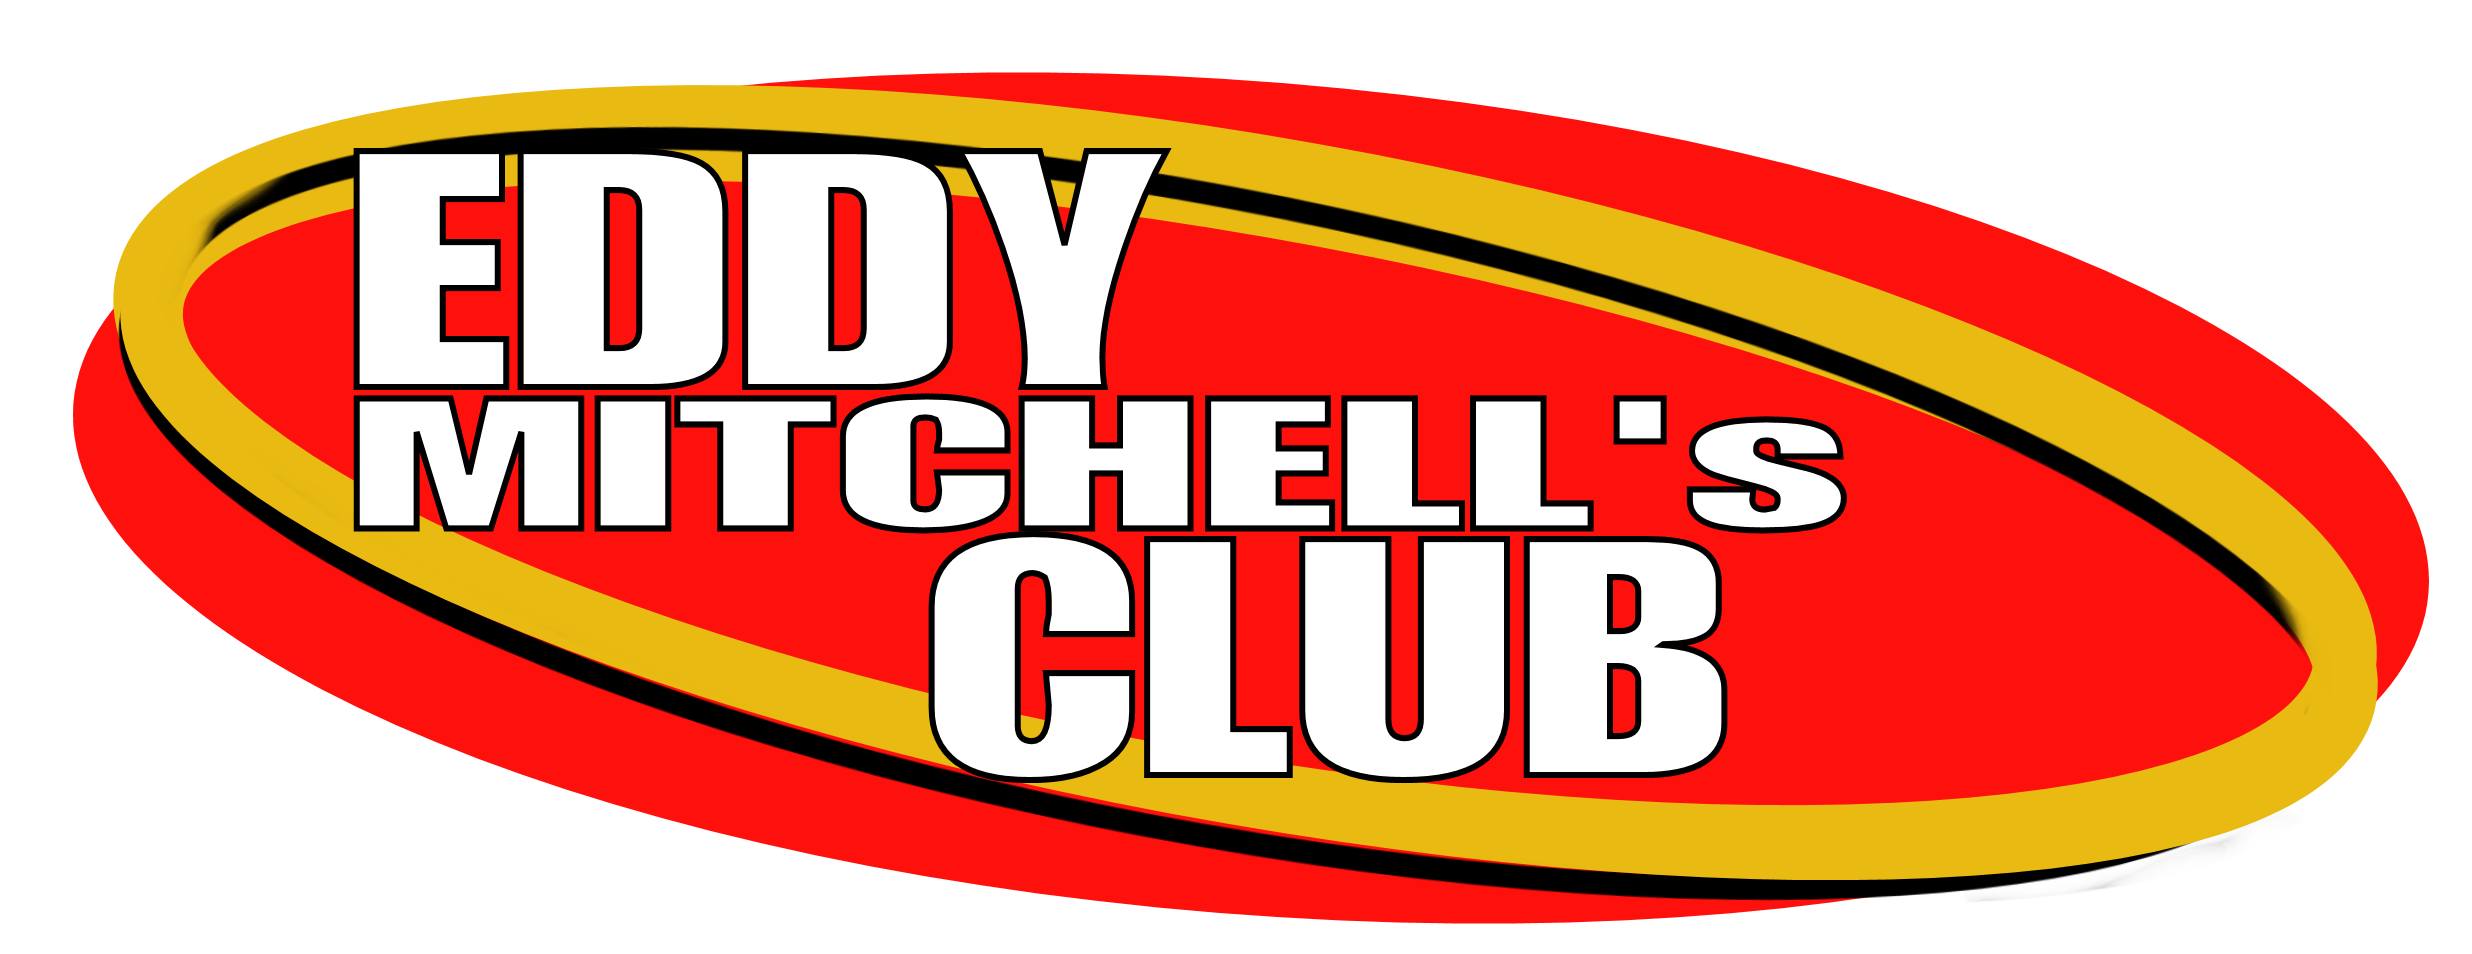 Eddy Mitchell s Club